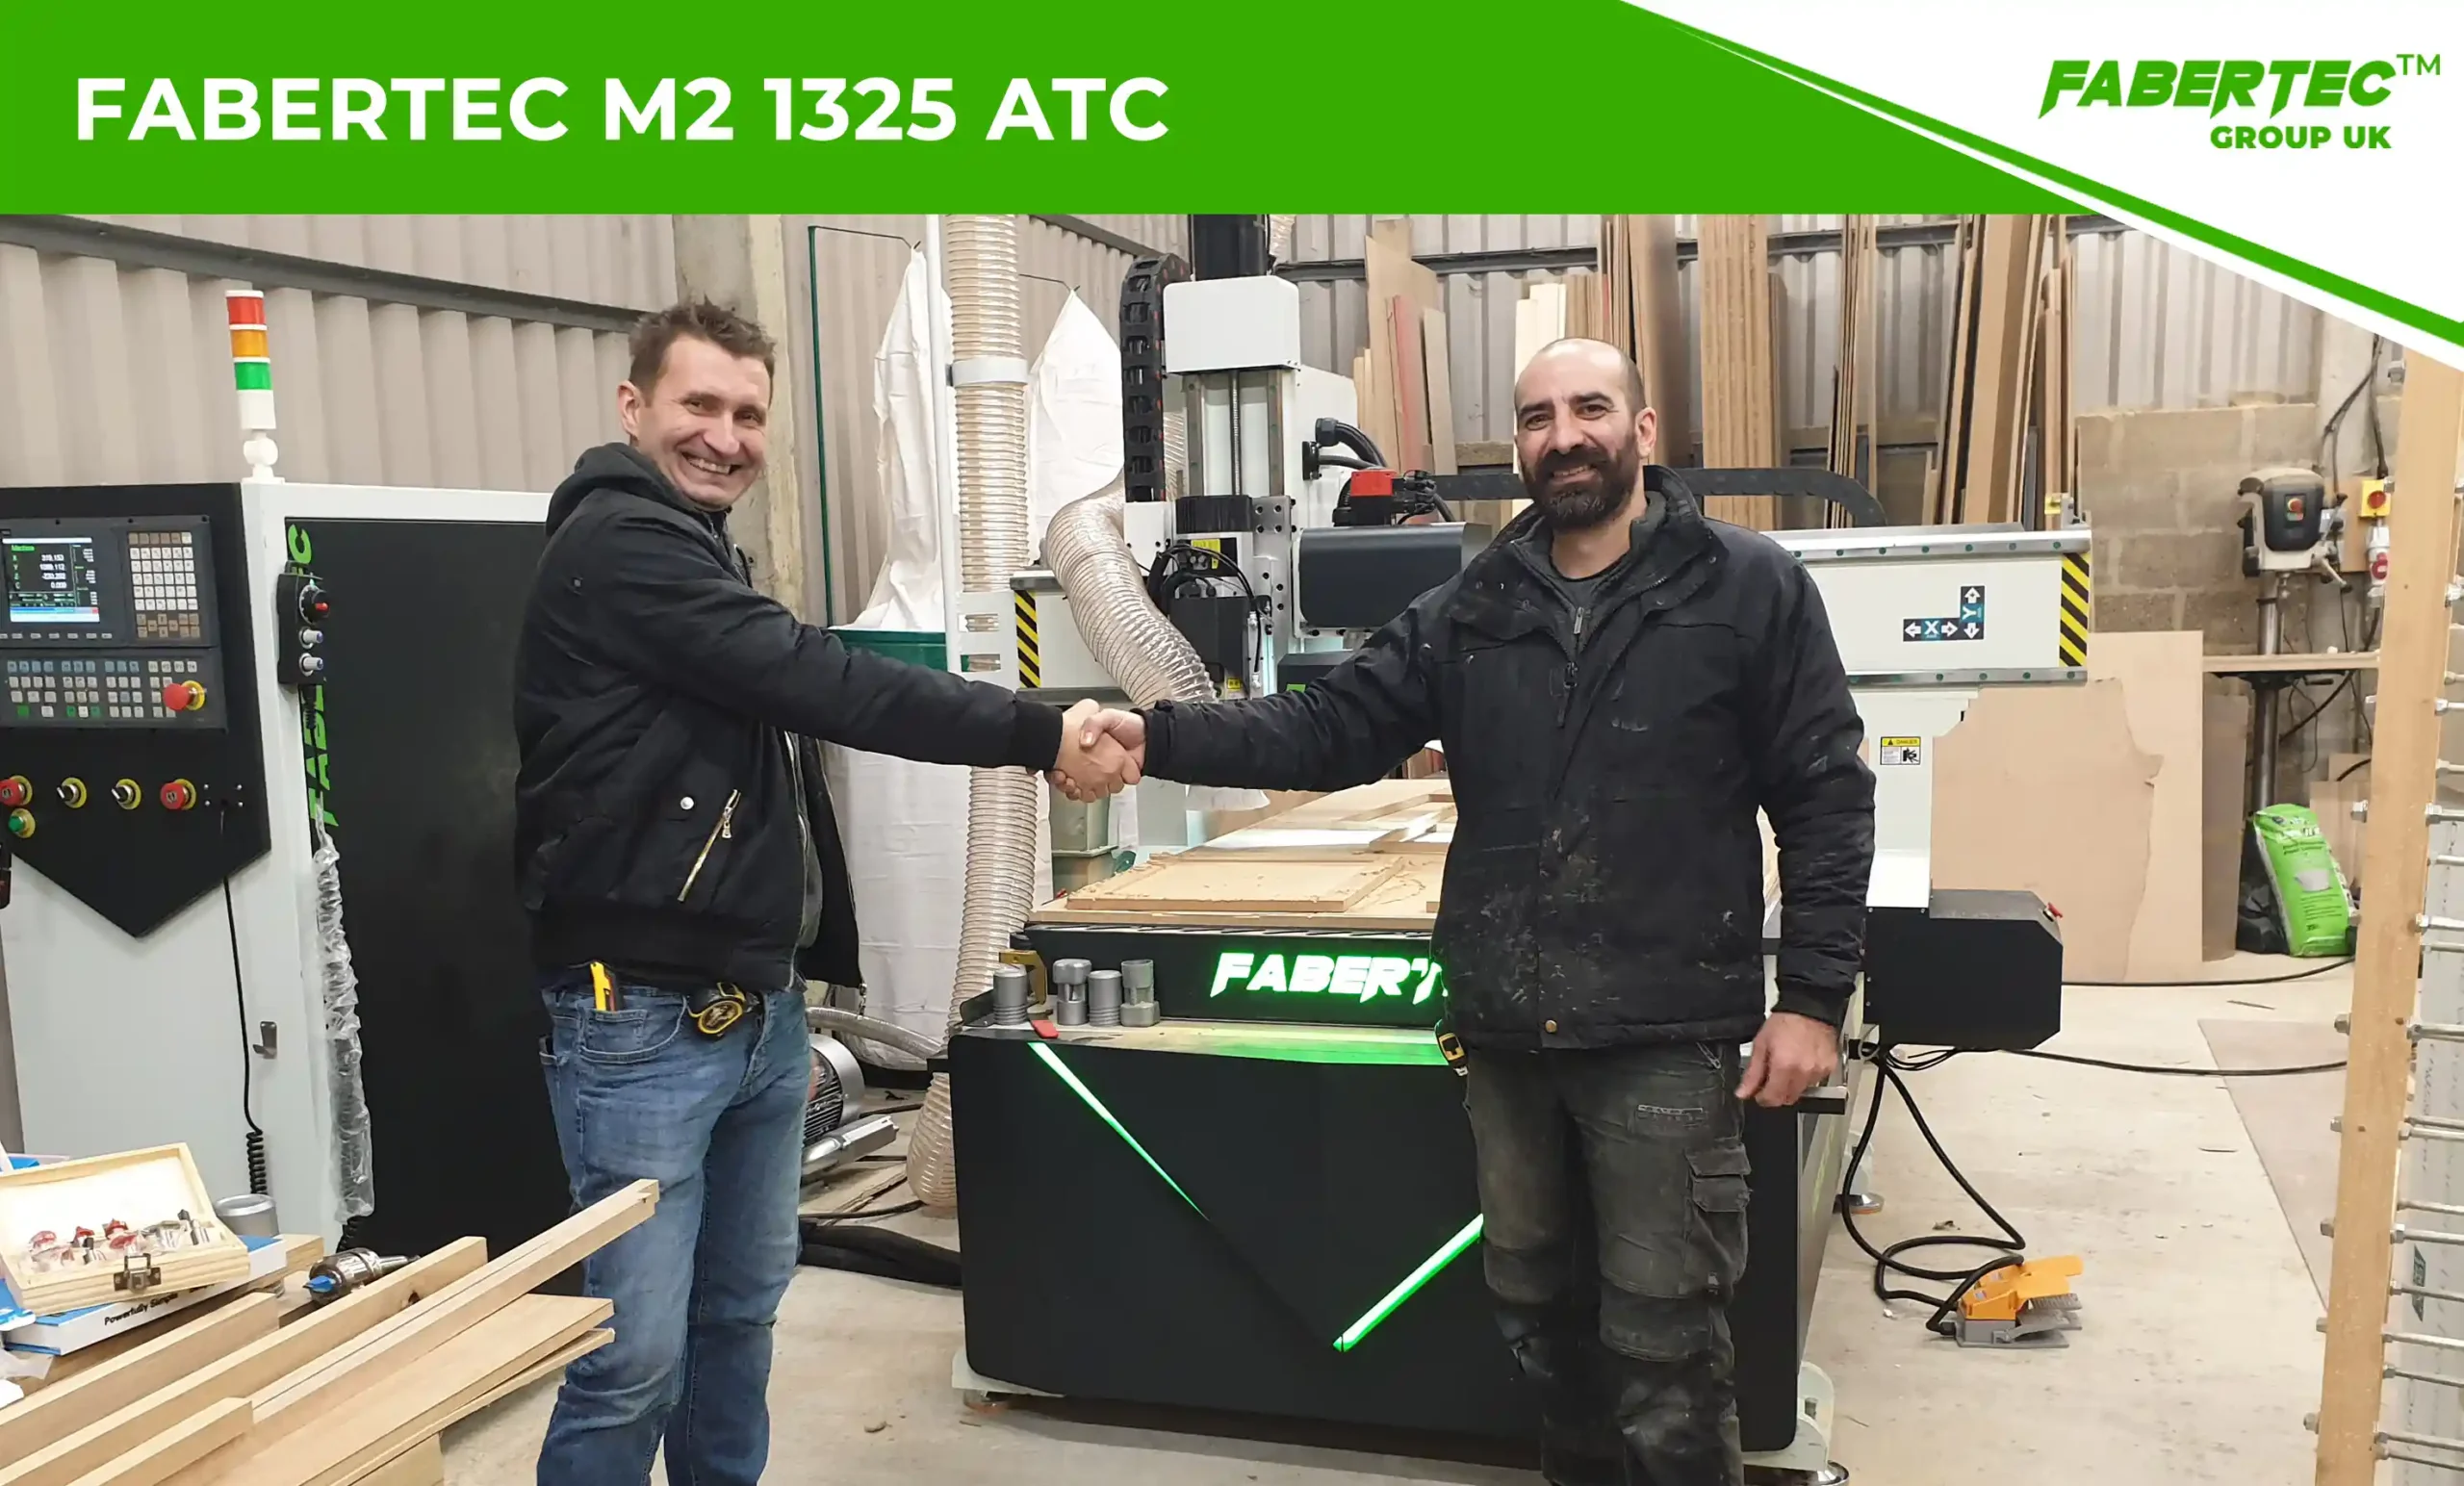 Fabertec M2 1325 ATC CNC Centre Router Installation